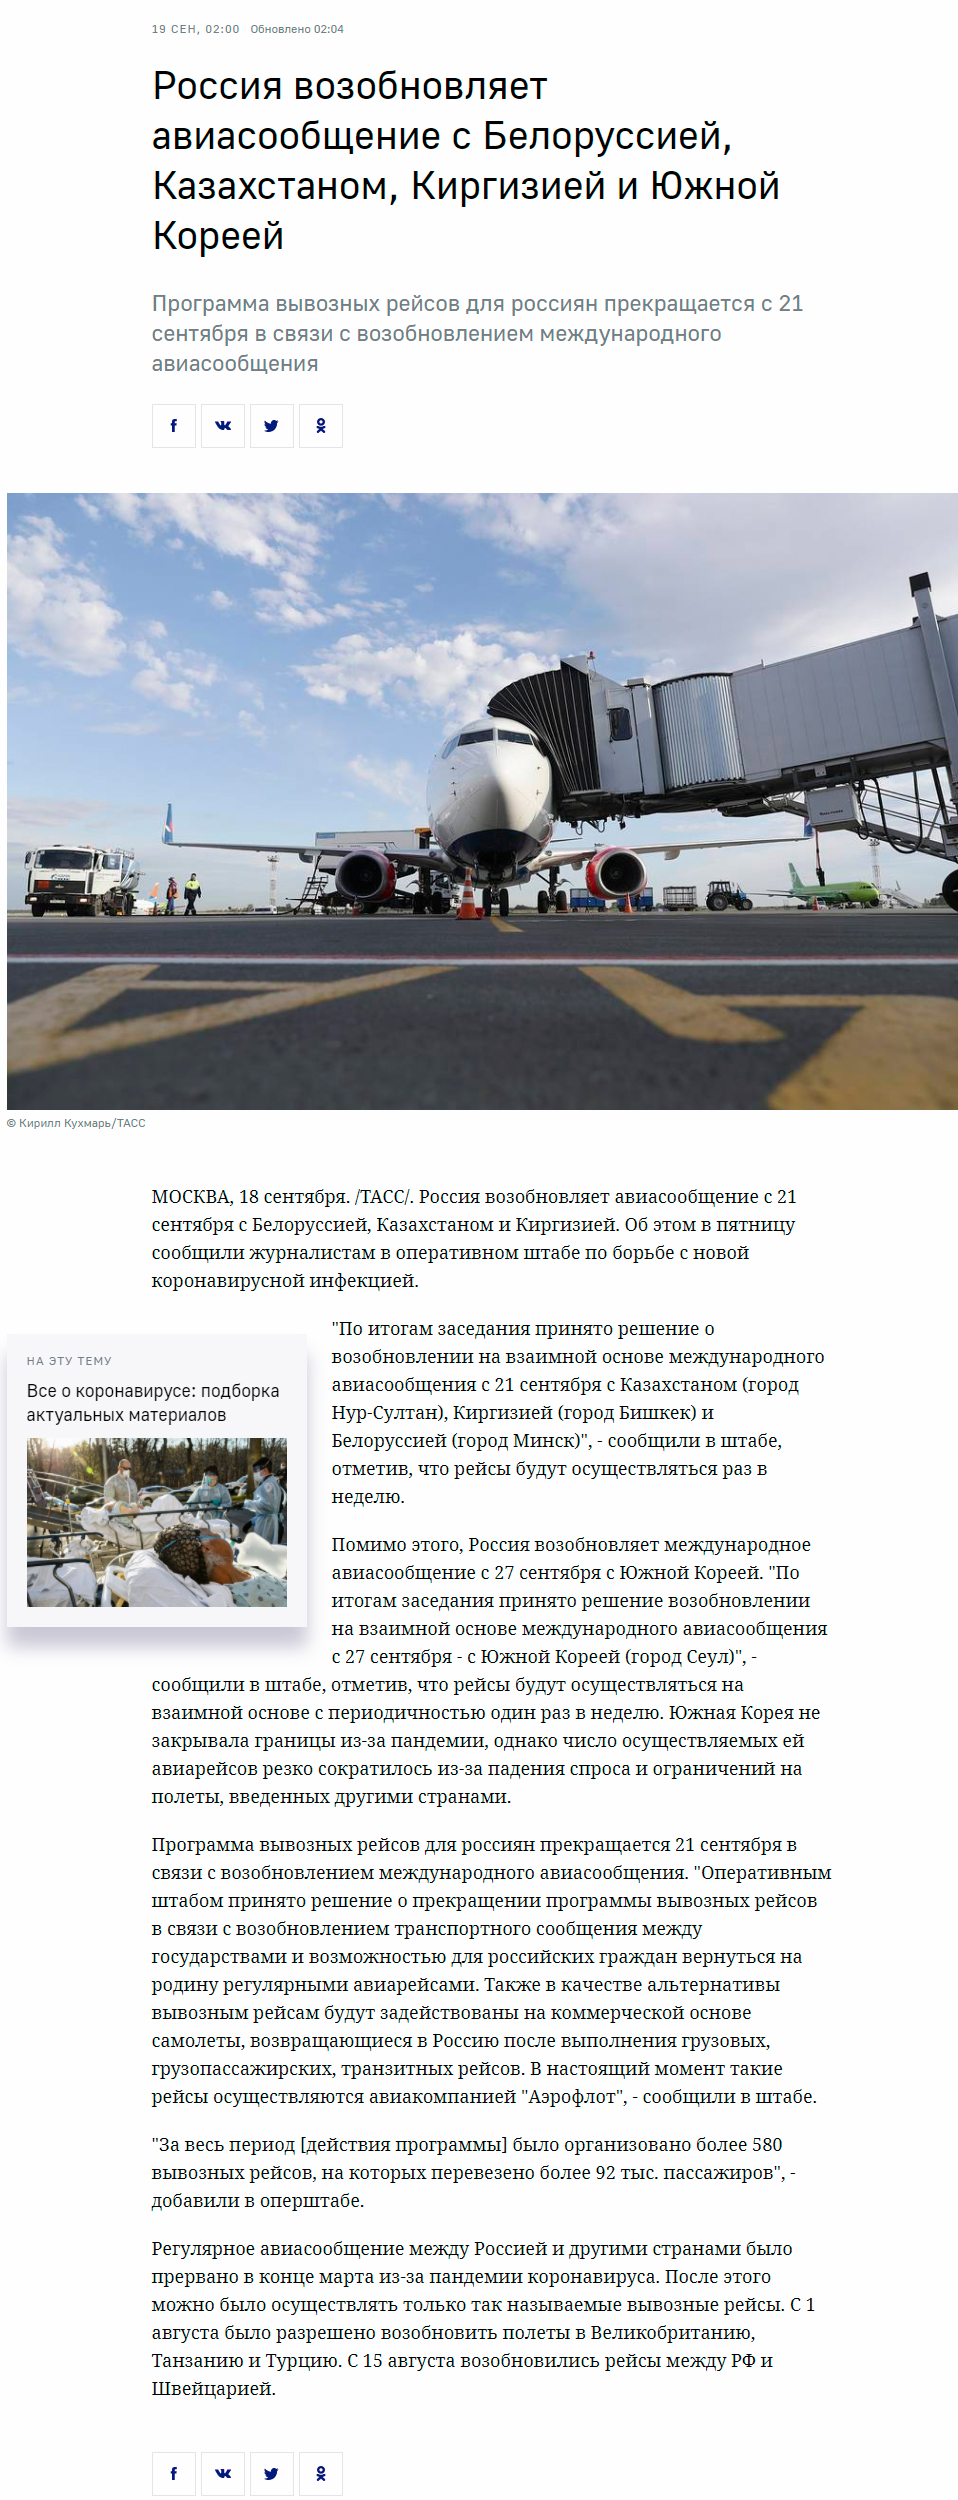 俄罗斯新增4个国家恢复客运航班